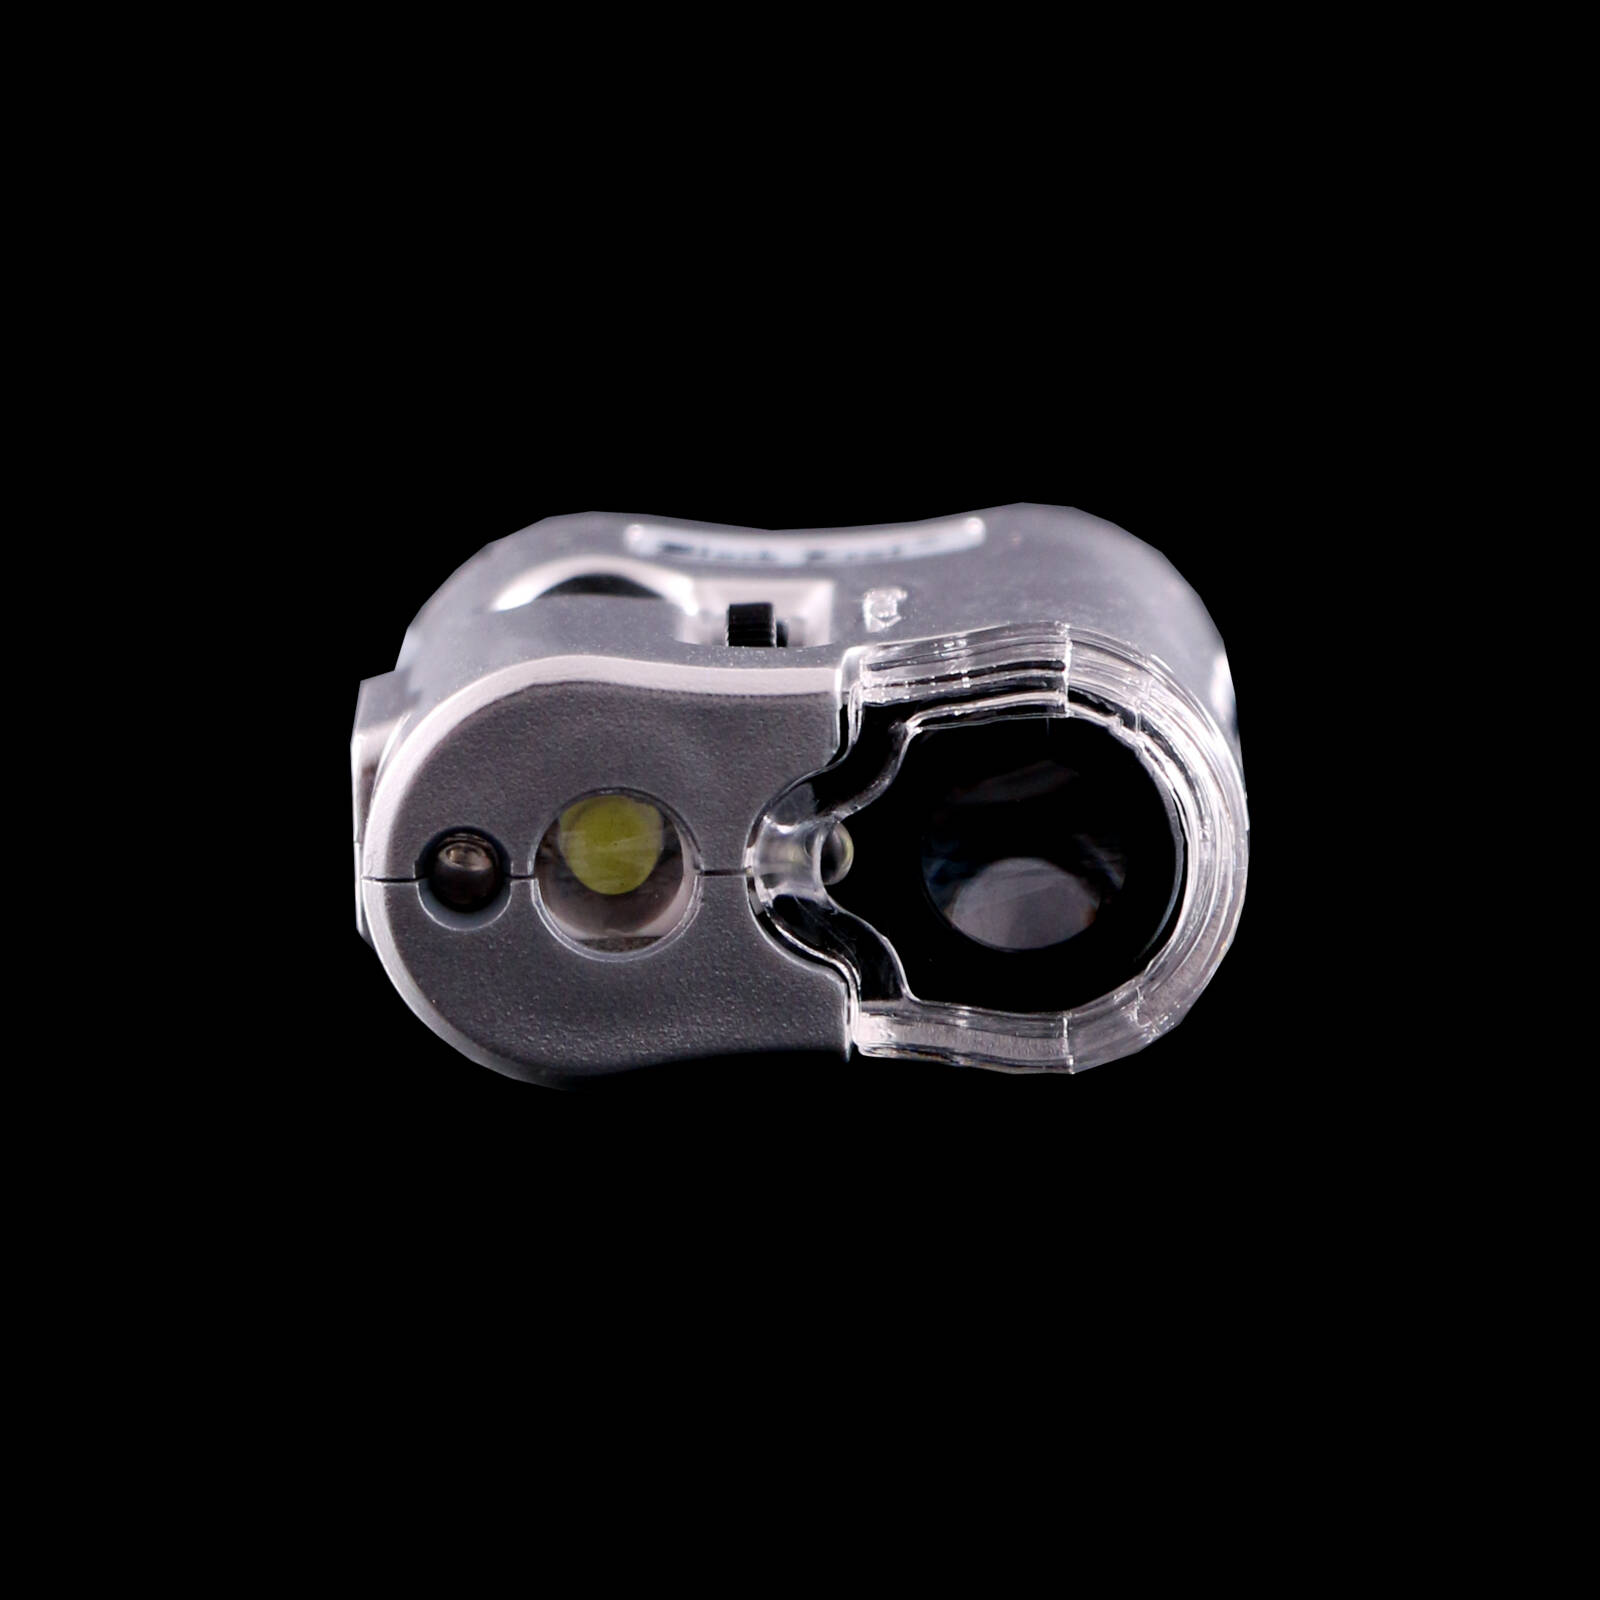 Bud-O-Scope | Taschen Mikroskop